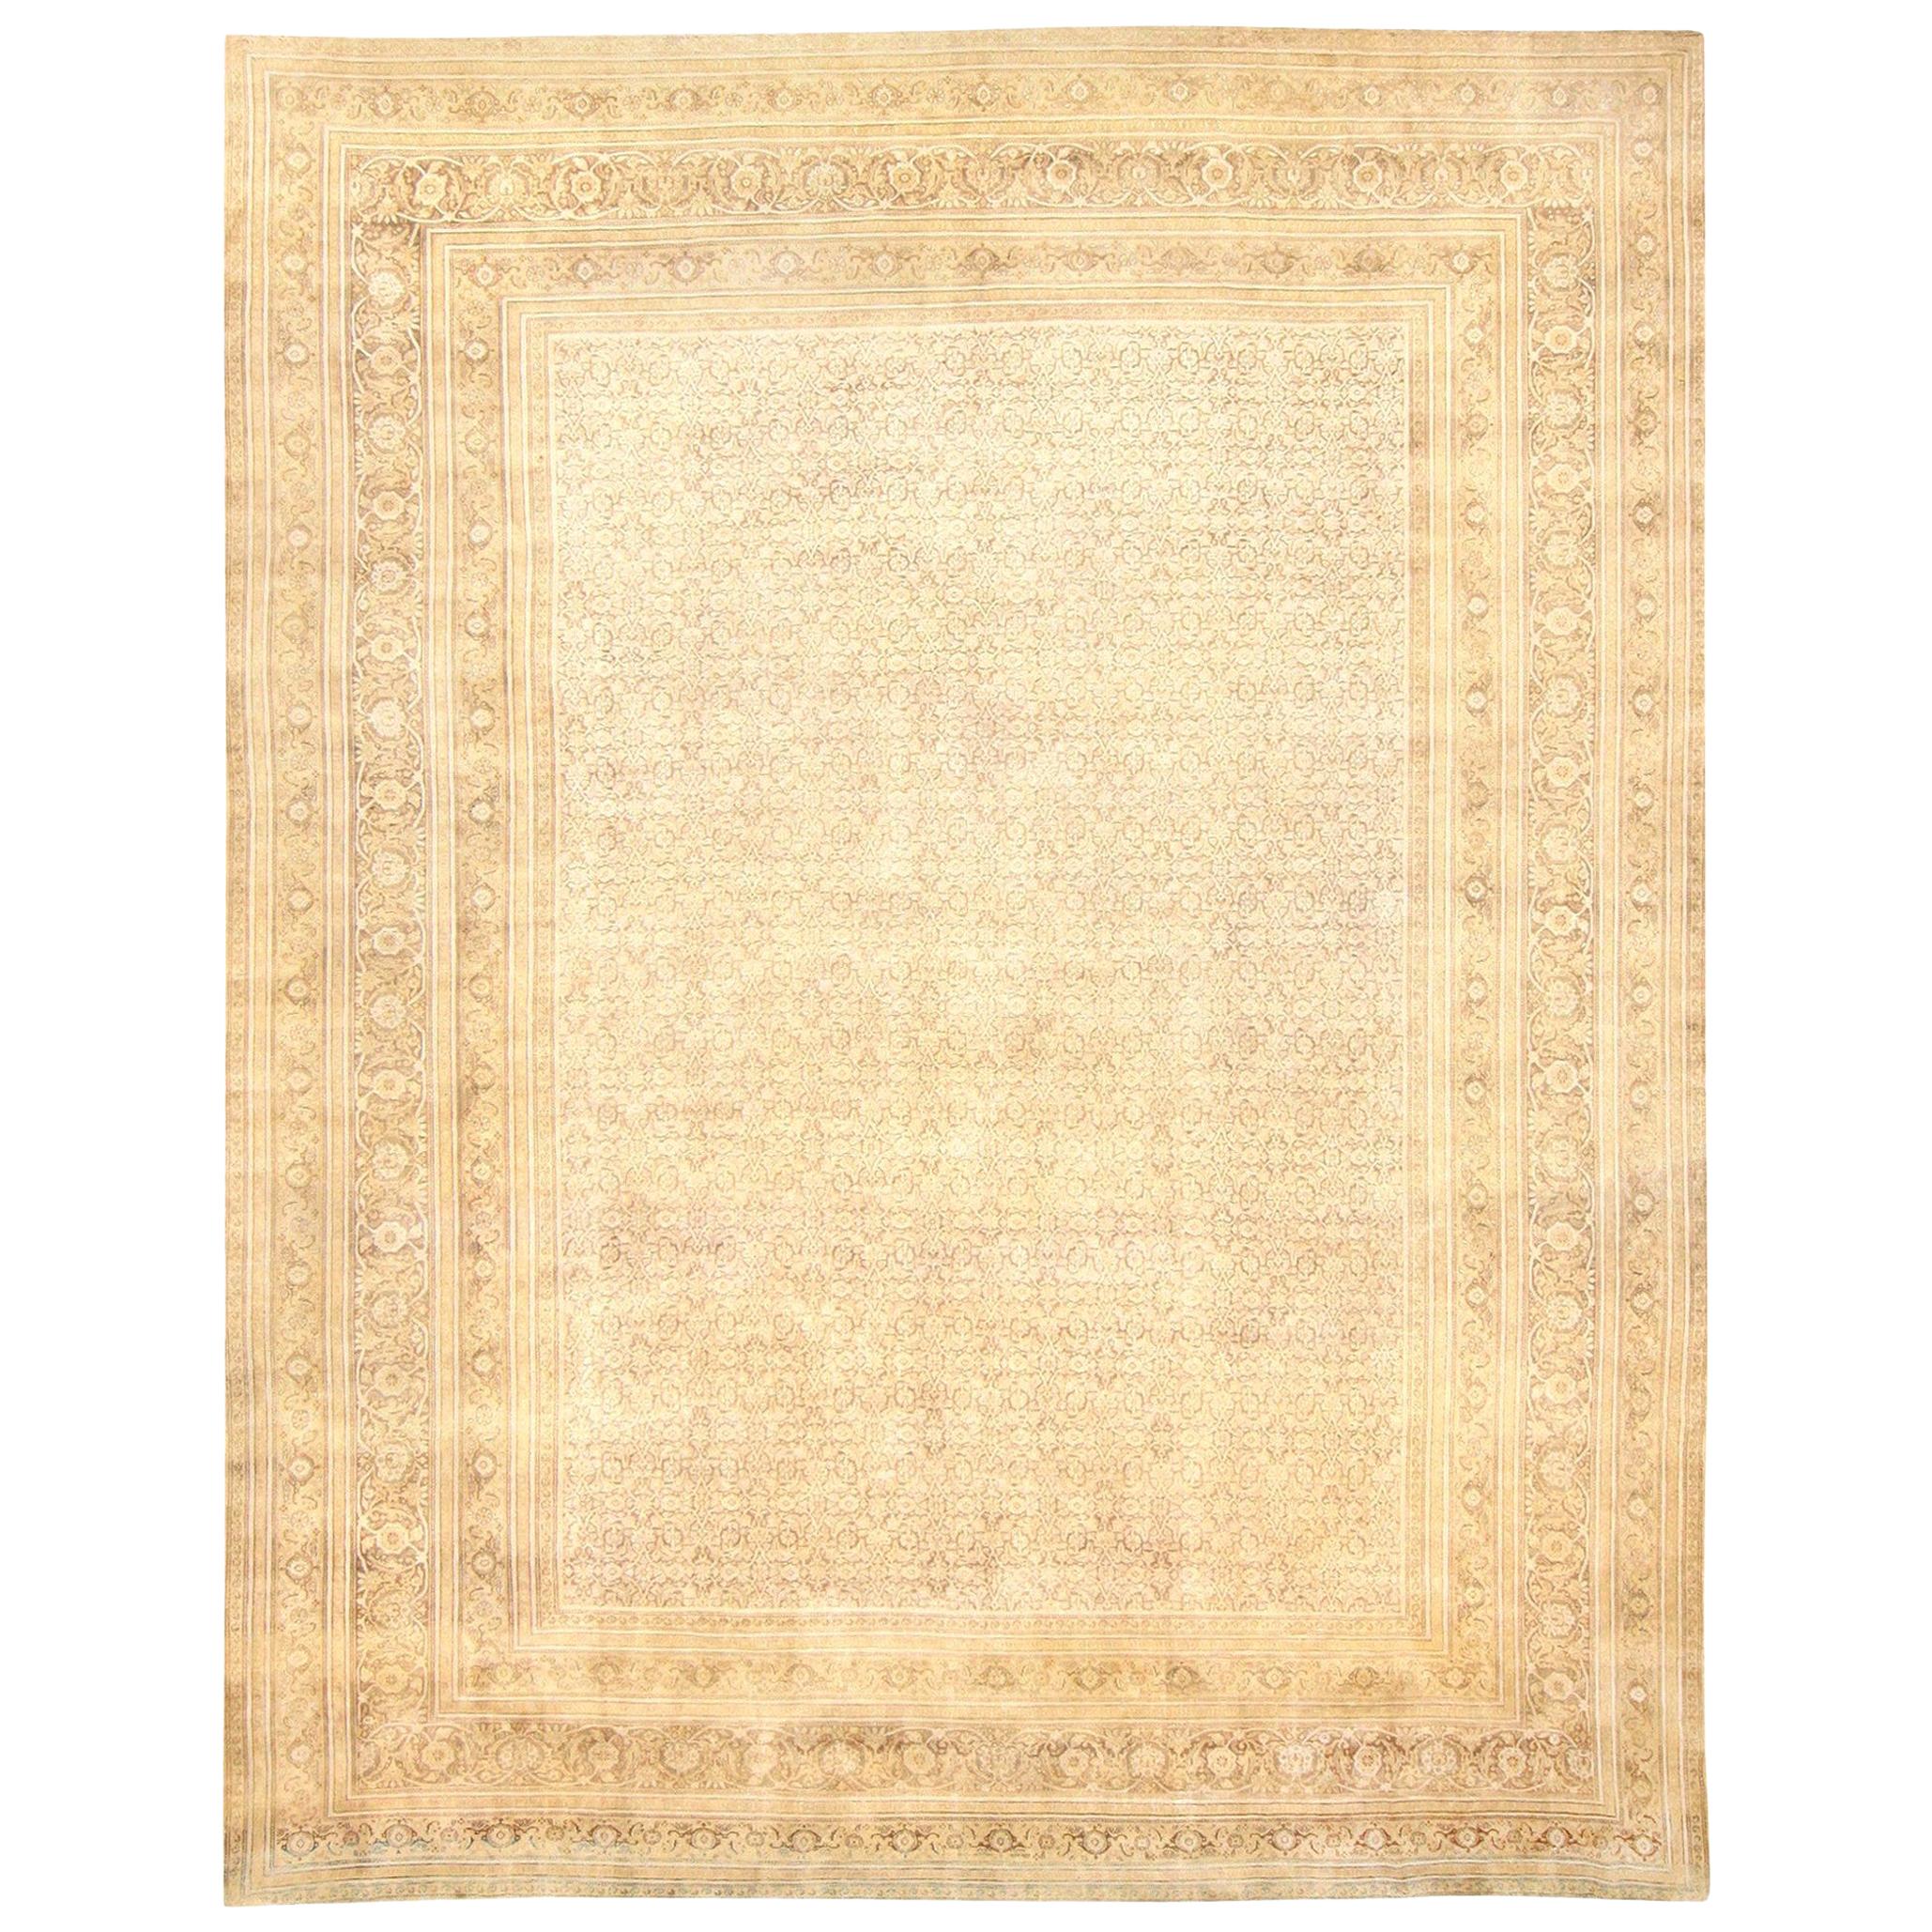 Antique Persian Tabriz Carpet. Size: 13' 7" x 16' 7" 